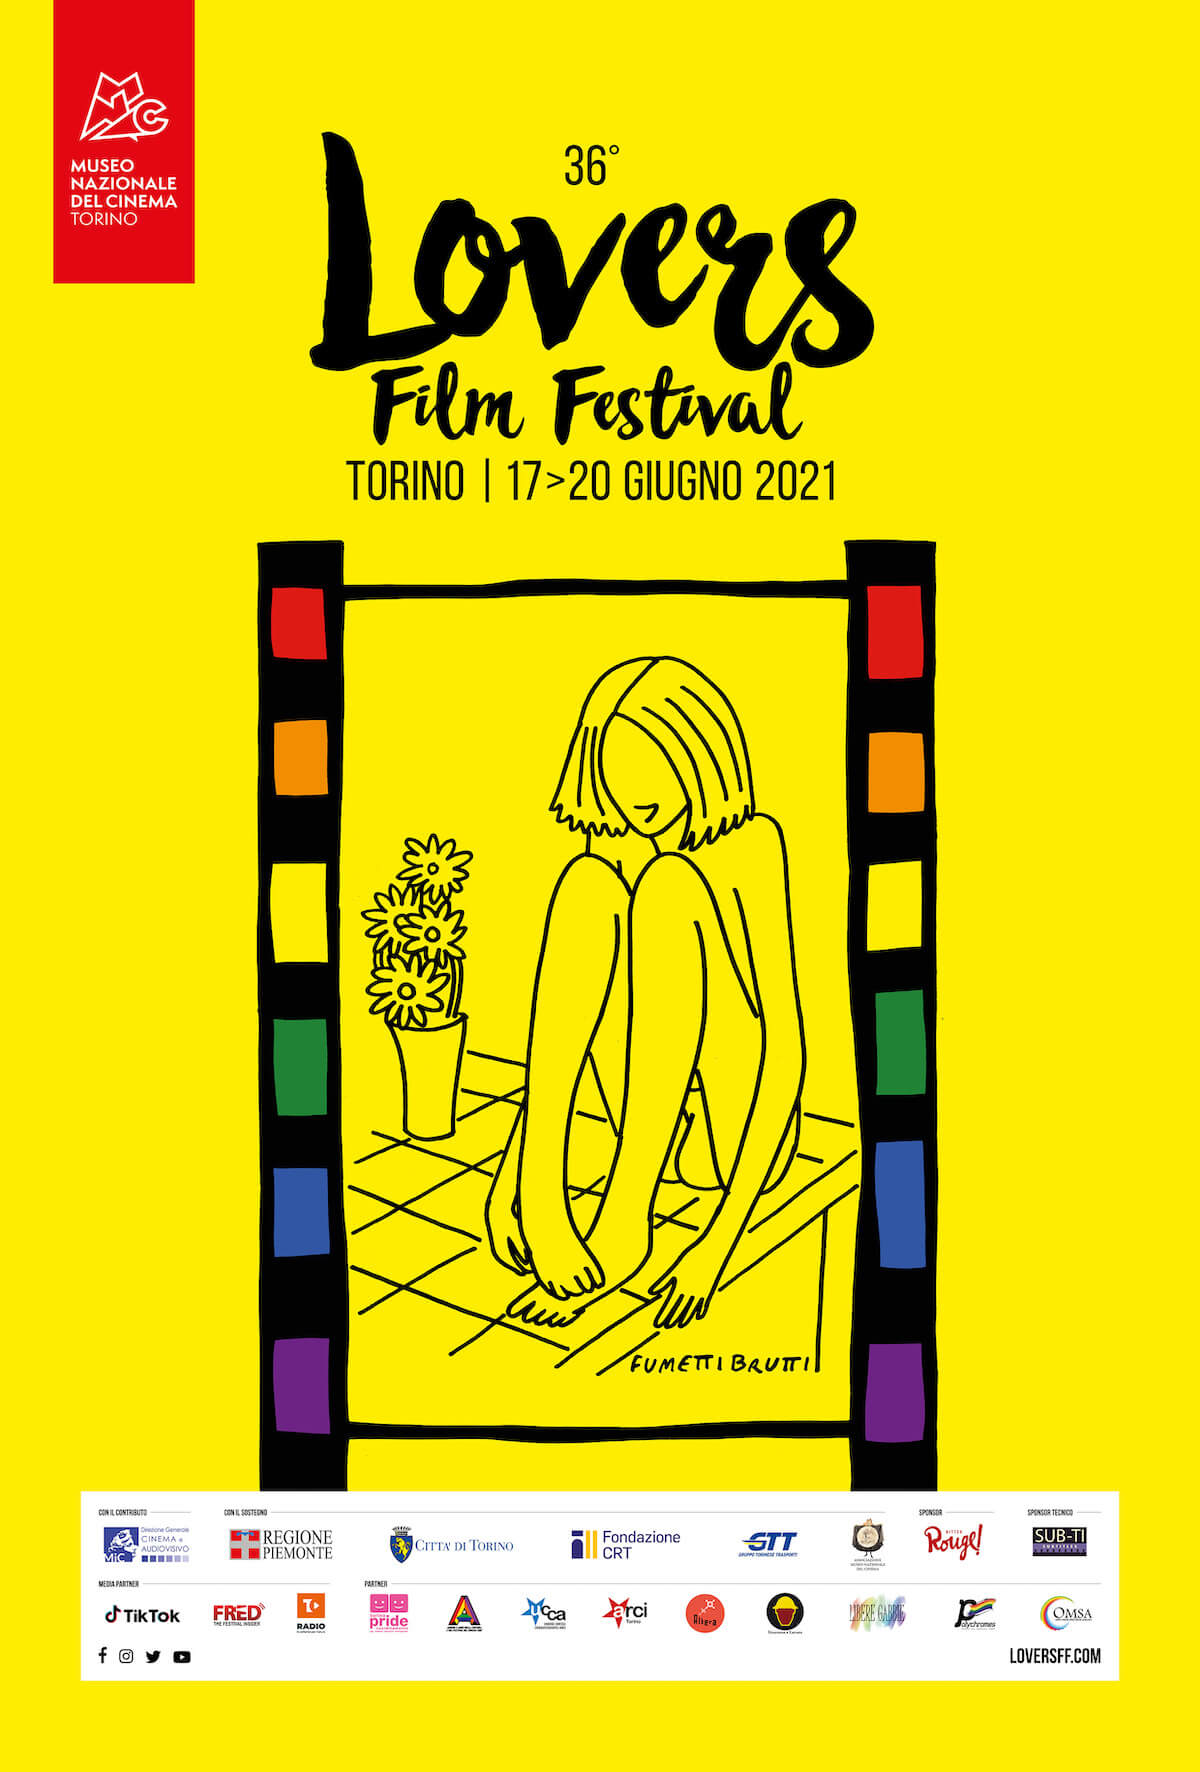 Lovers Film festival 2021, il programma ufficiale: tutti i film e tutti gli ospiti - Lovers Film Festival 2021 il manifesto ufficiale firmato Fumettibrutti 2 - Gay.it